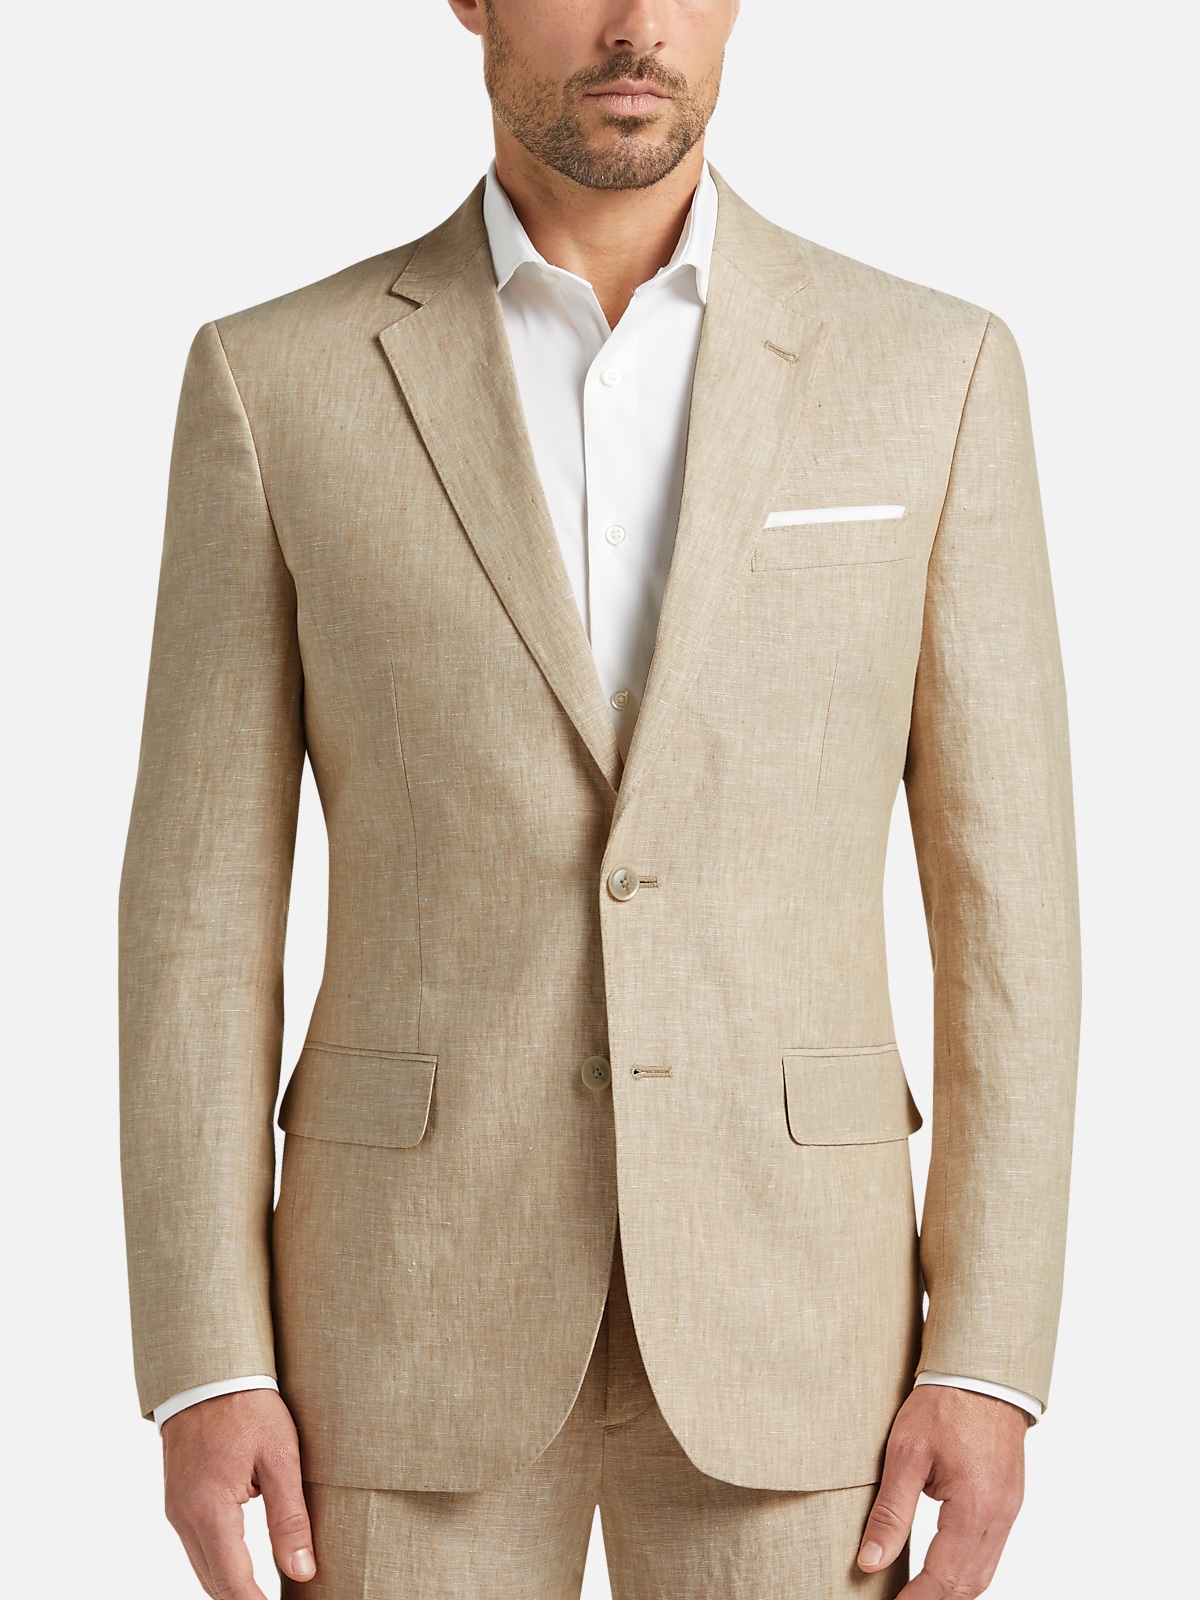 JOE Joseph Abboud Slim Fit Linen Suit Separates Jacket | All Sale| Men's  Wearhouse